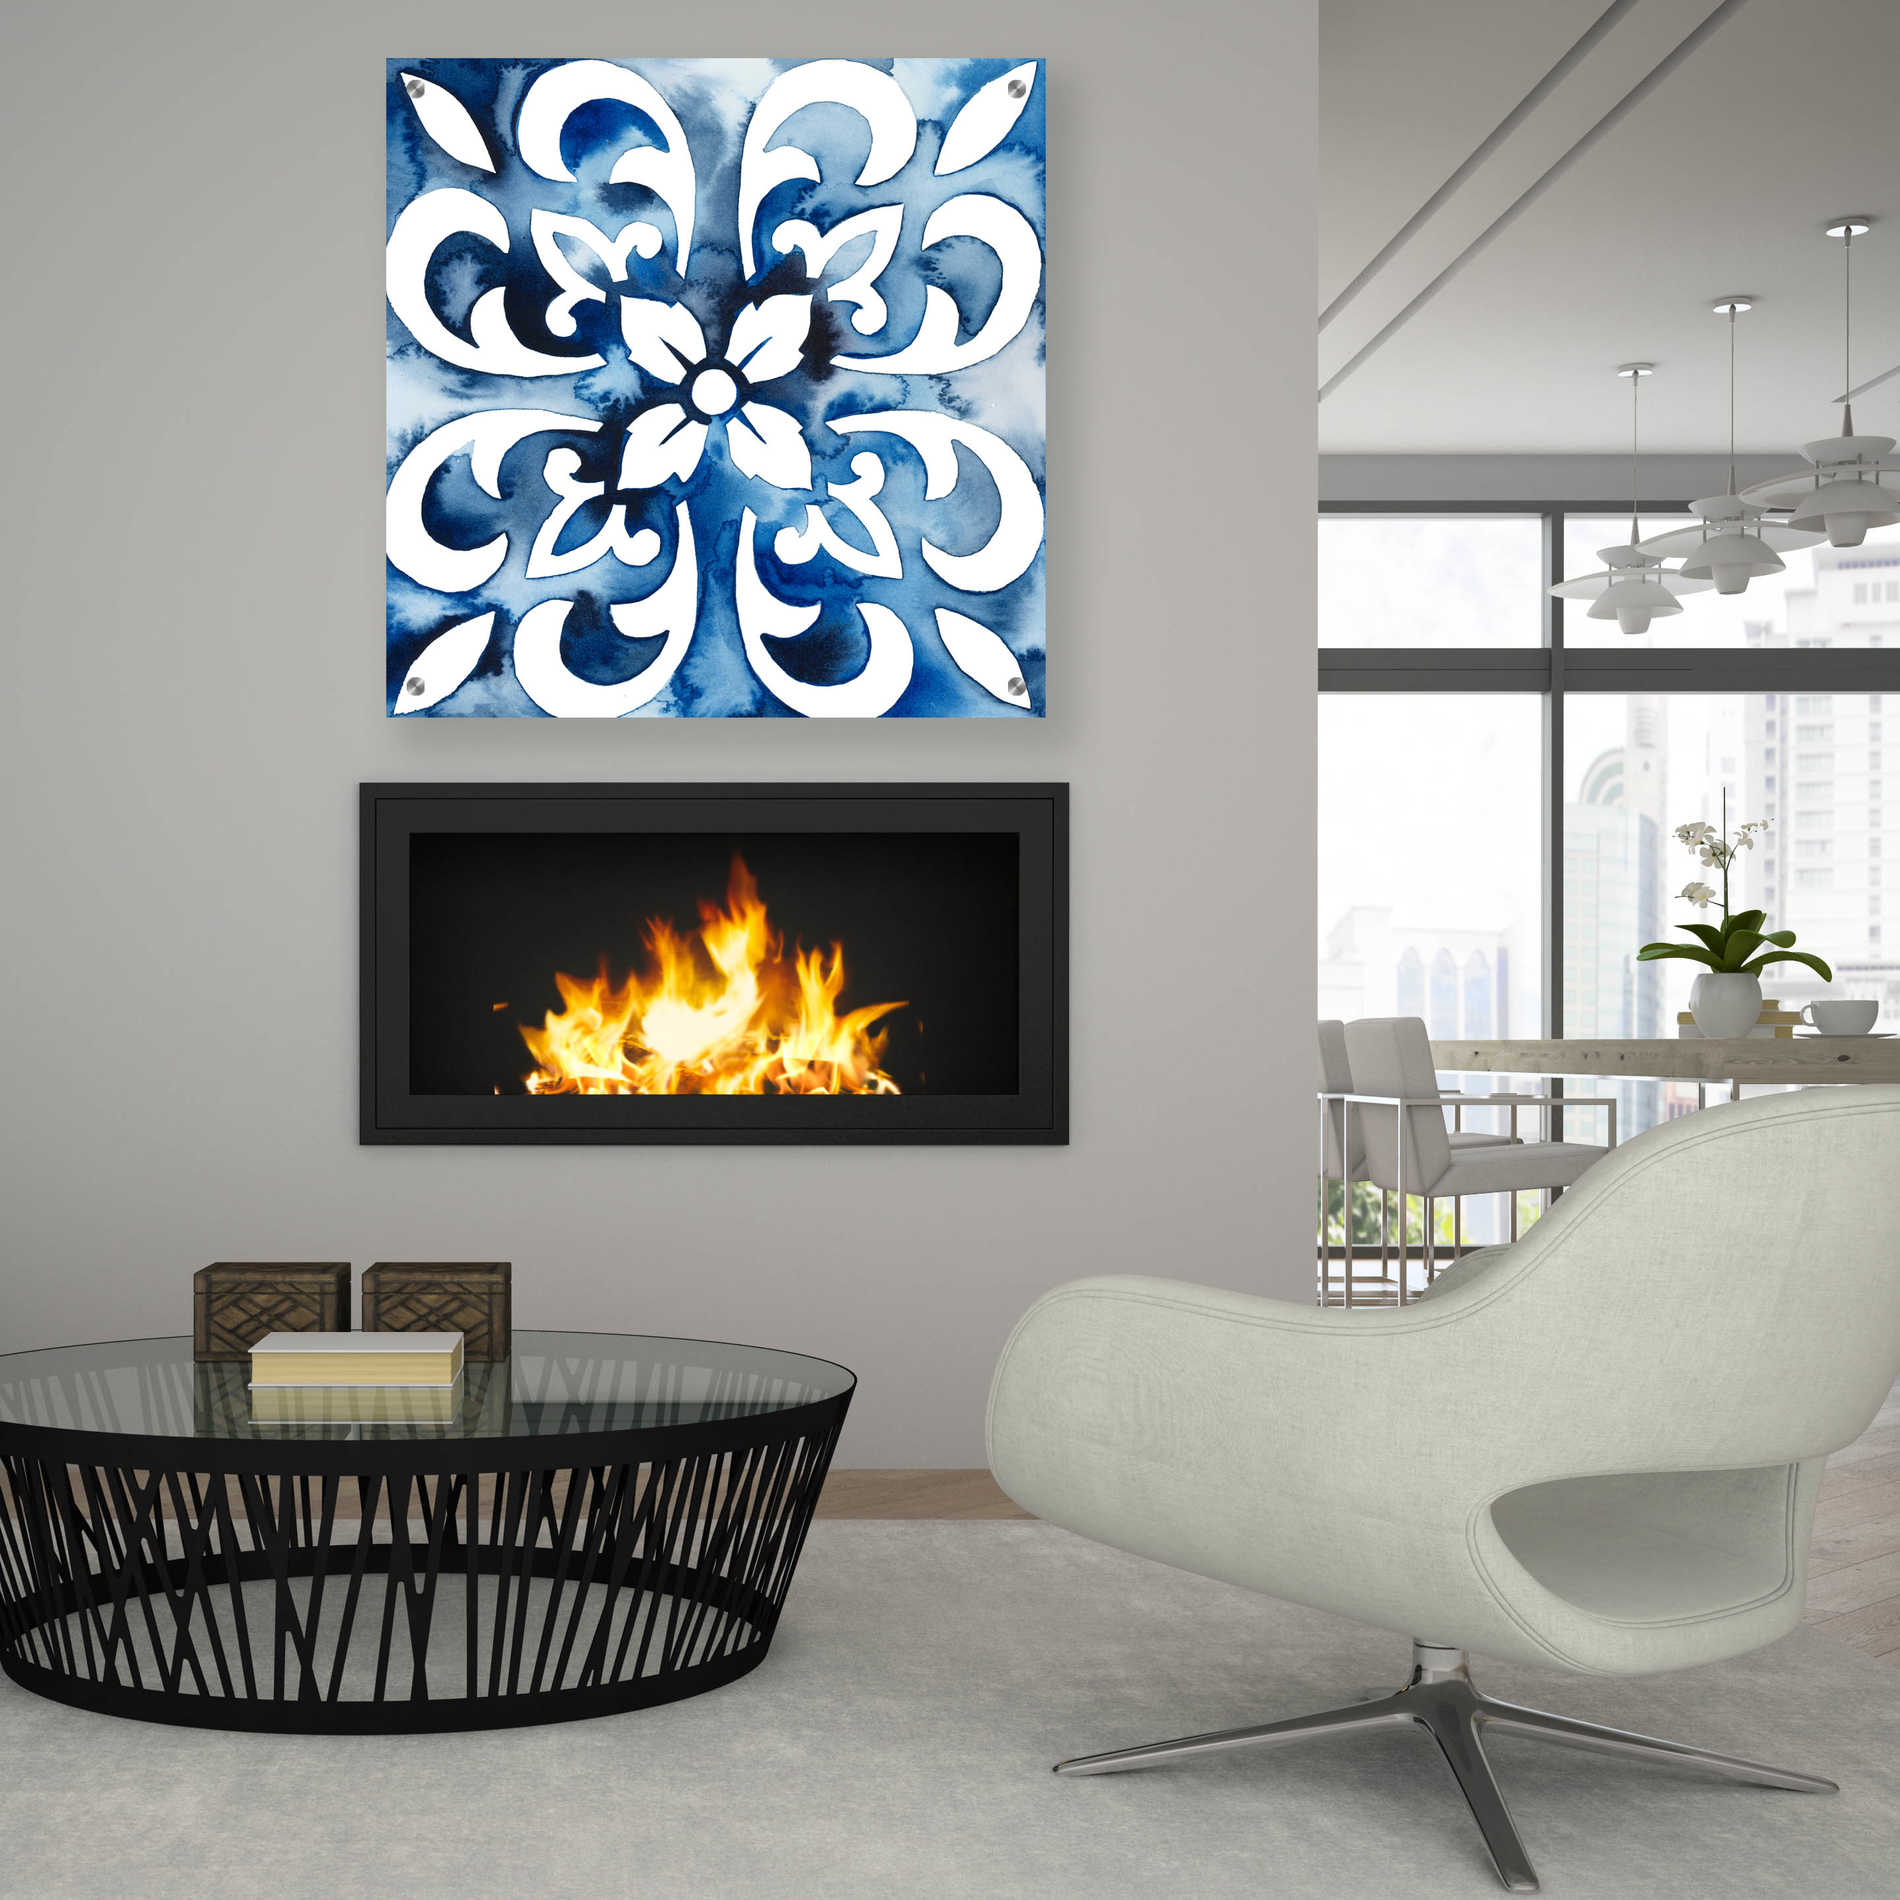 Epic Art 'Cobalt Tile II' by Grace Popp, Acrylic Glass Wall Art,36x36